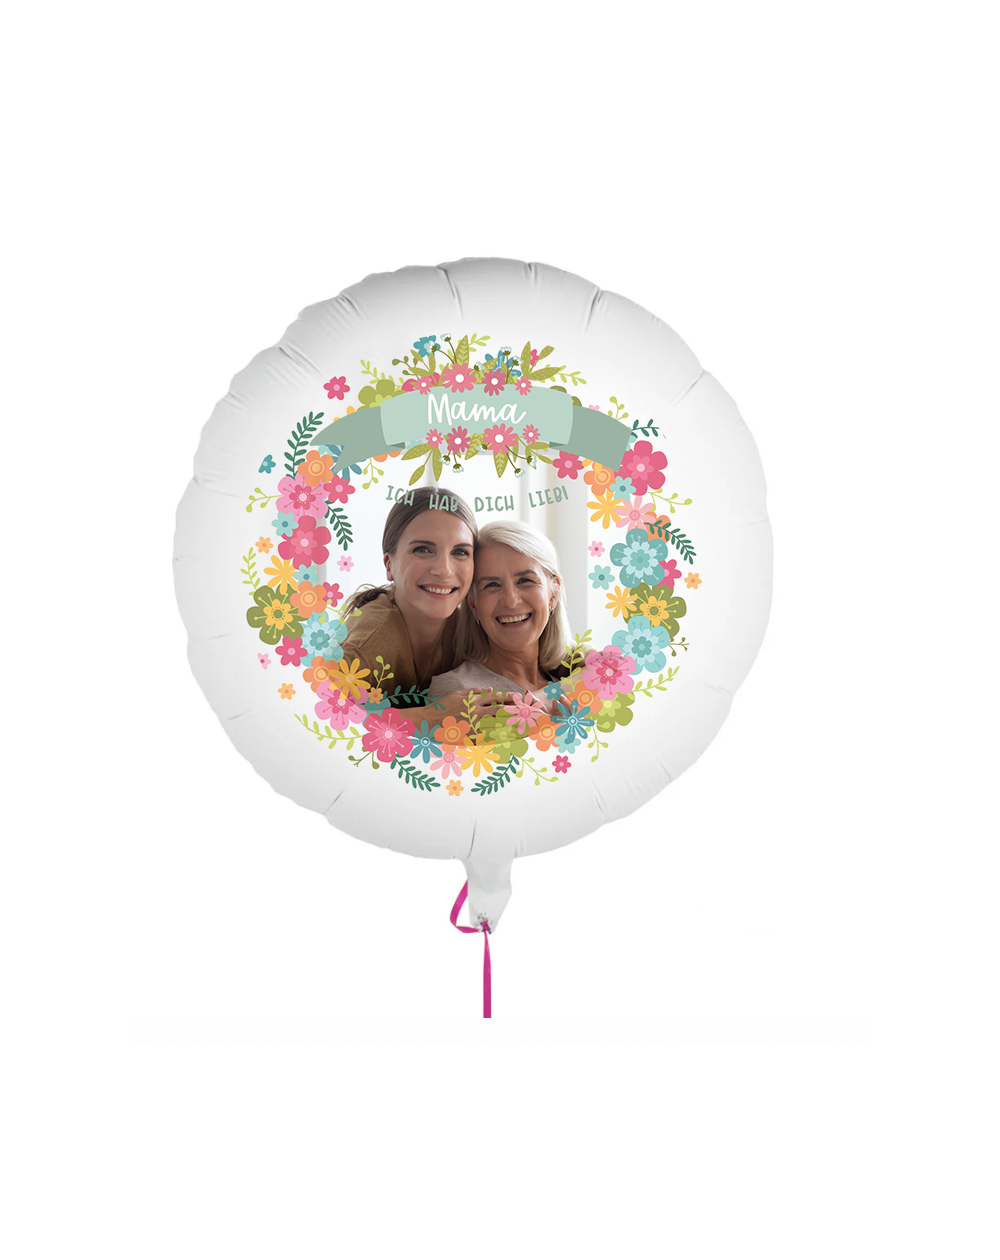 Fotoballon bedruckt mit einem Motiv zum Muttertag mit dem Text "hab dich lieb Mama" auf einem Geschenkballon